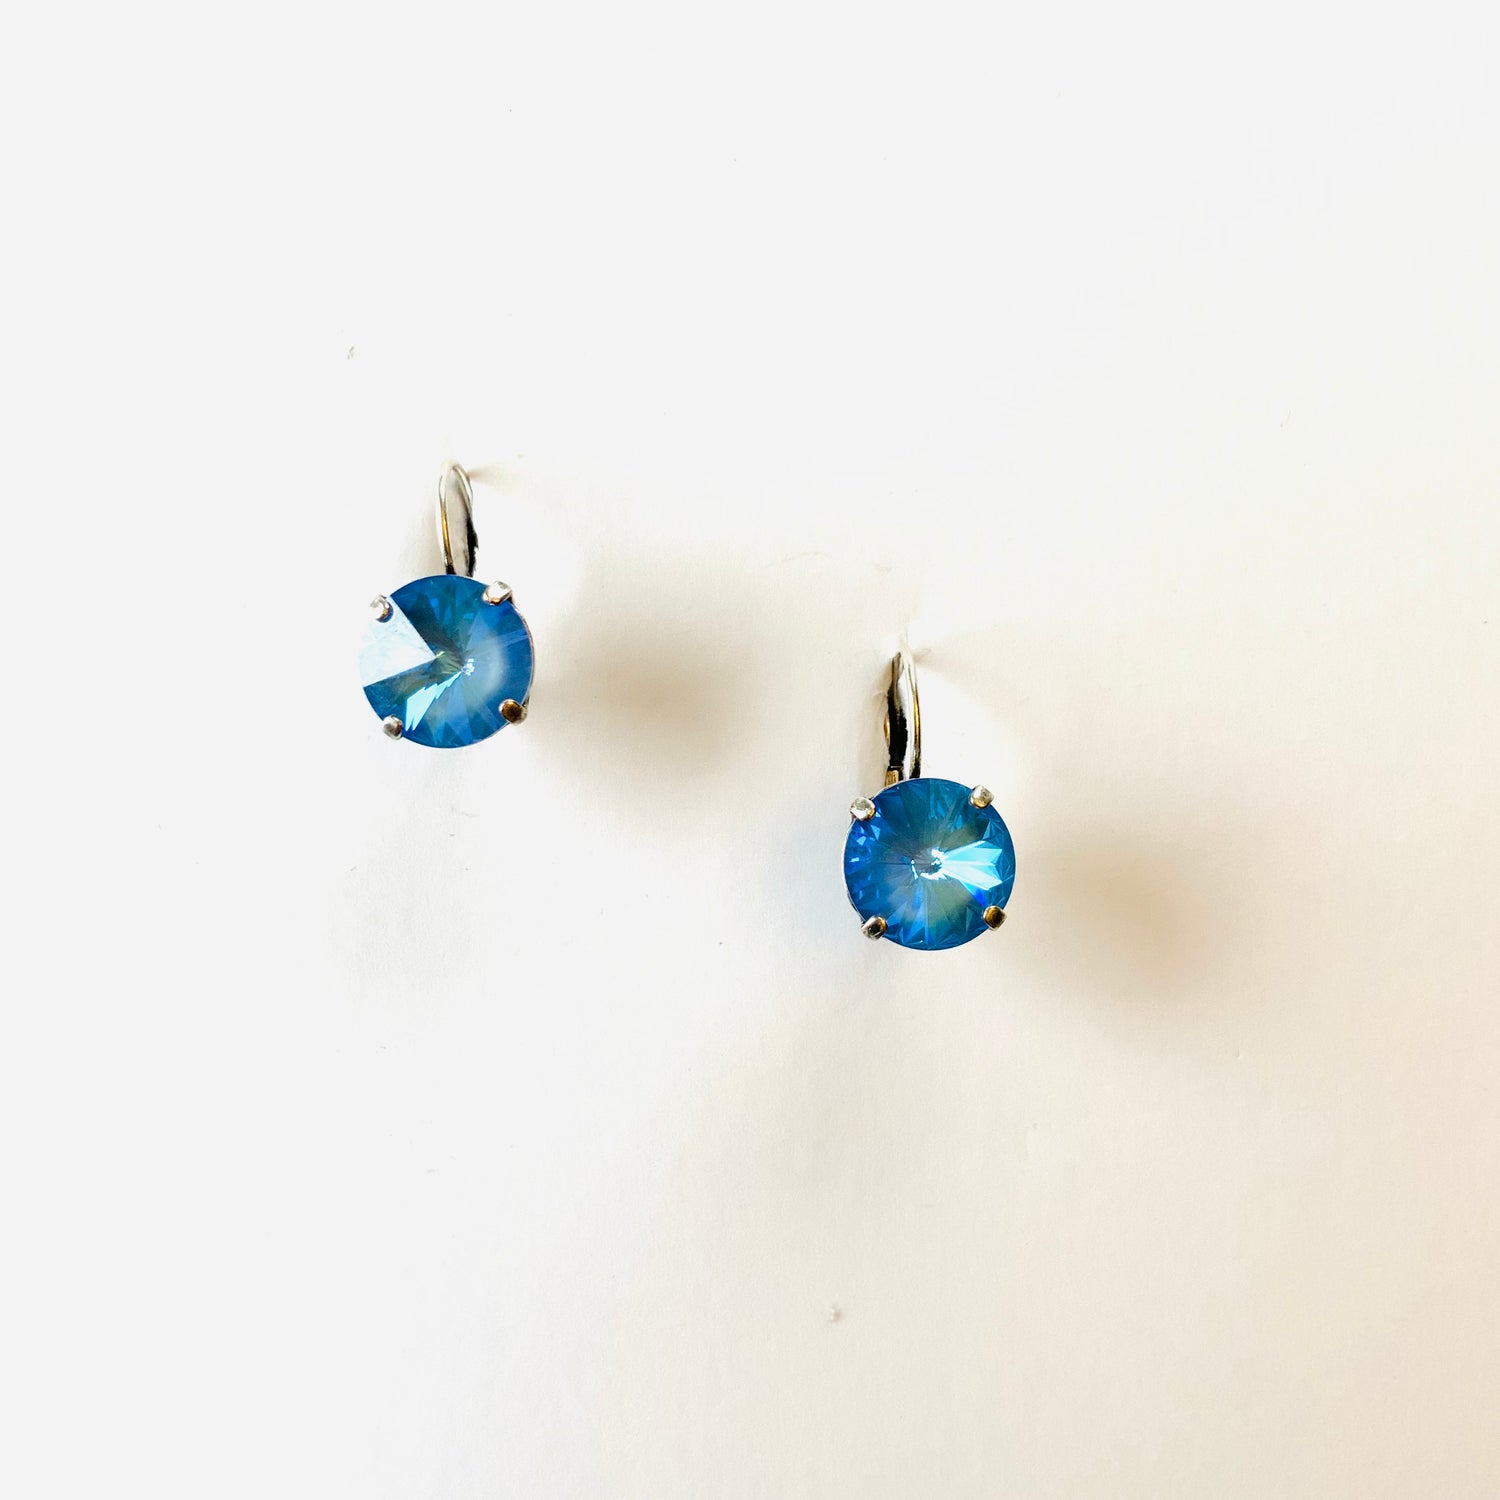 12mm Drop or Post Earrings in Ocean Blue DeLite